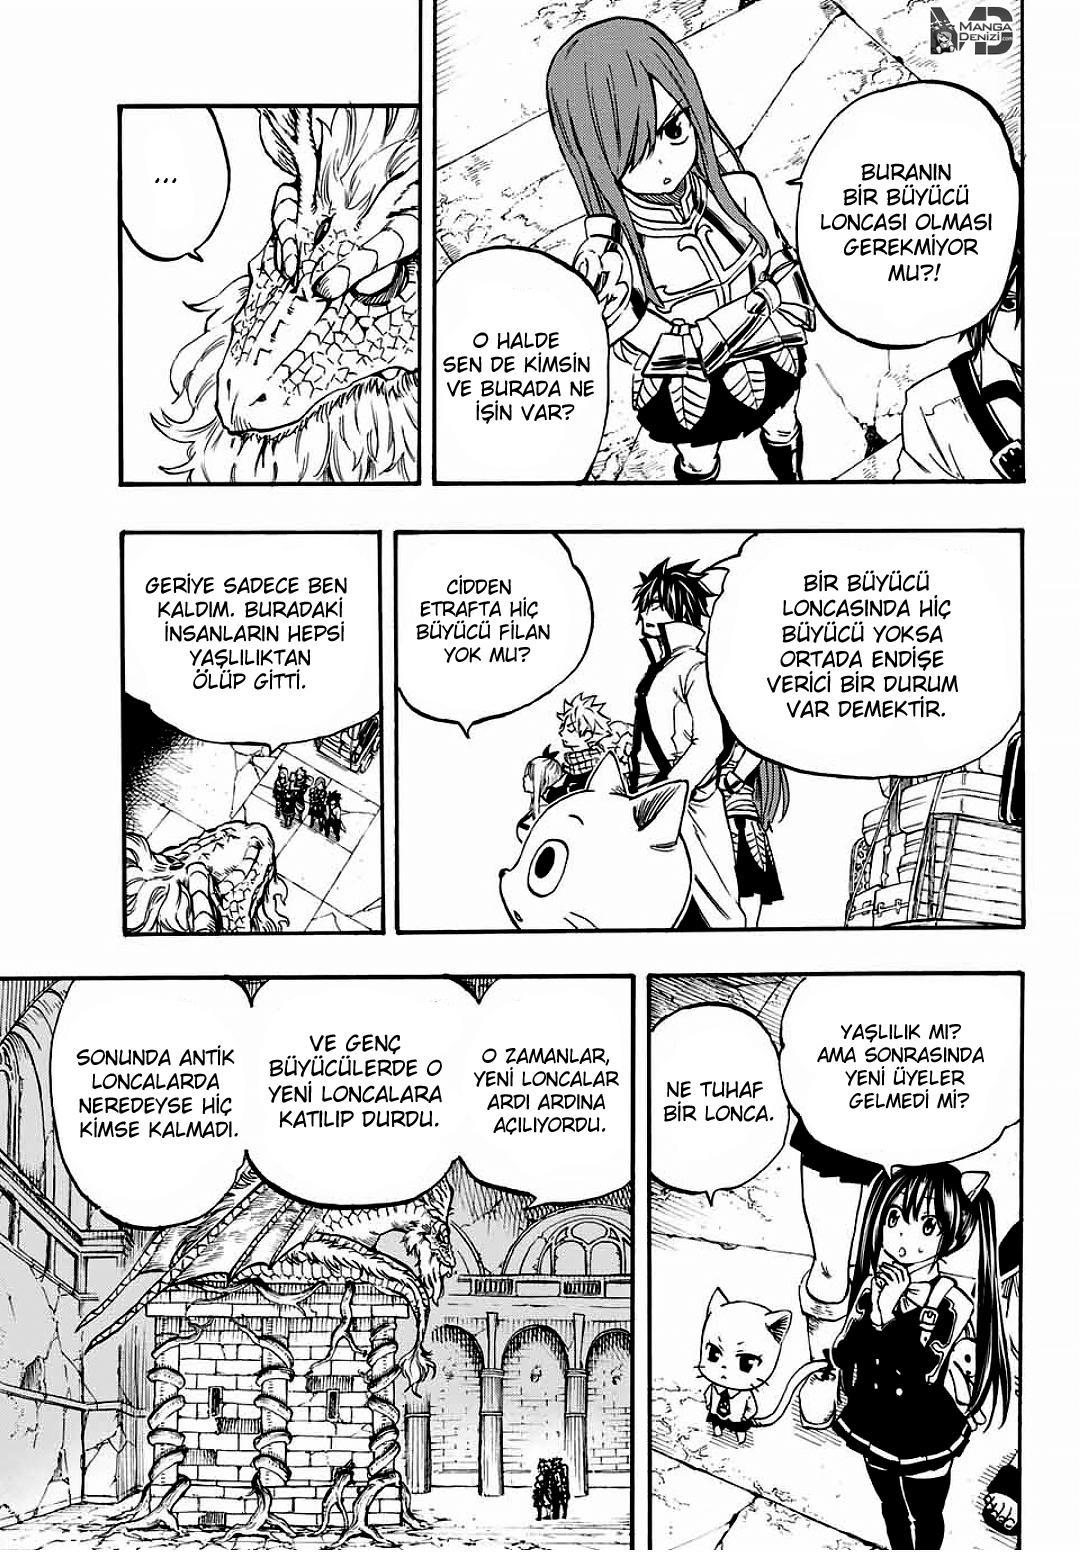 Fairy Tail: 100 Years Quest mangasının 002 bölümünün 4. sayfasını okuyorsunuz.